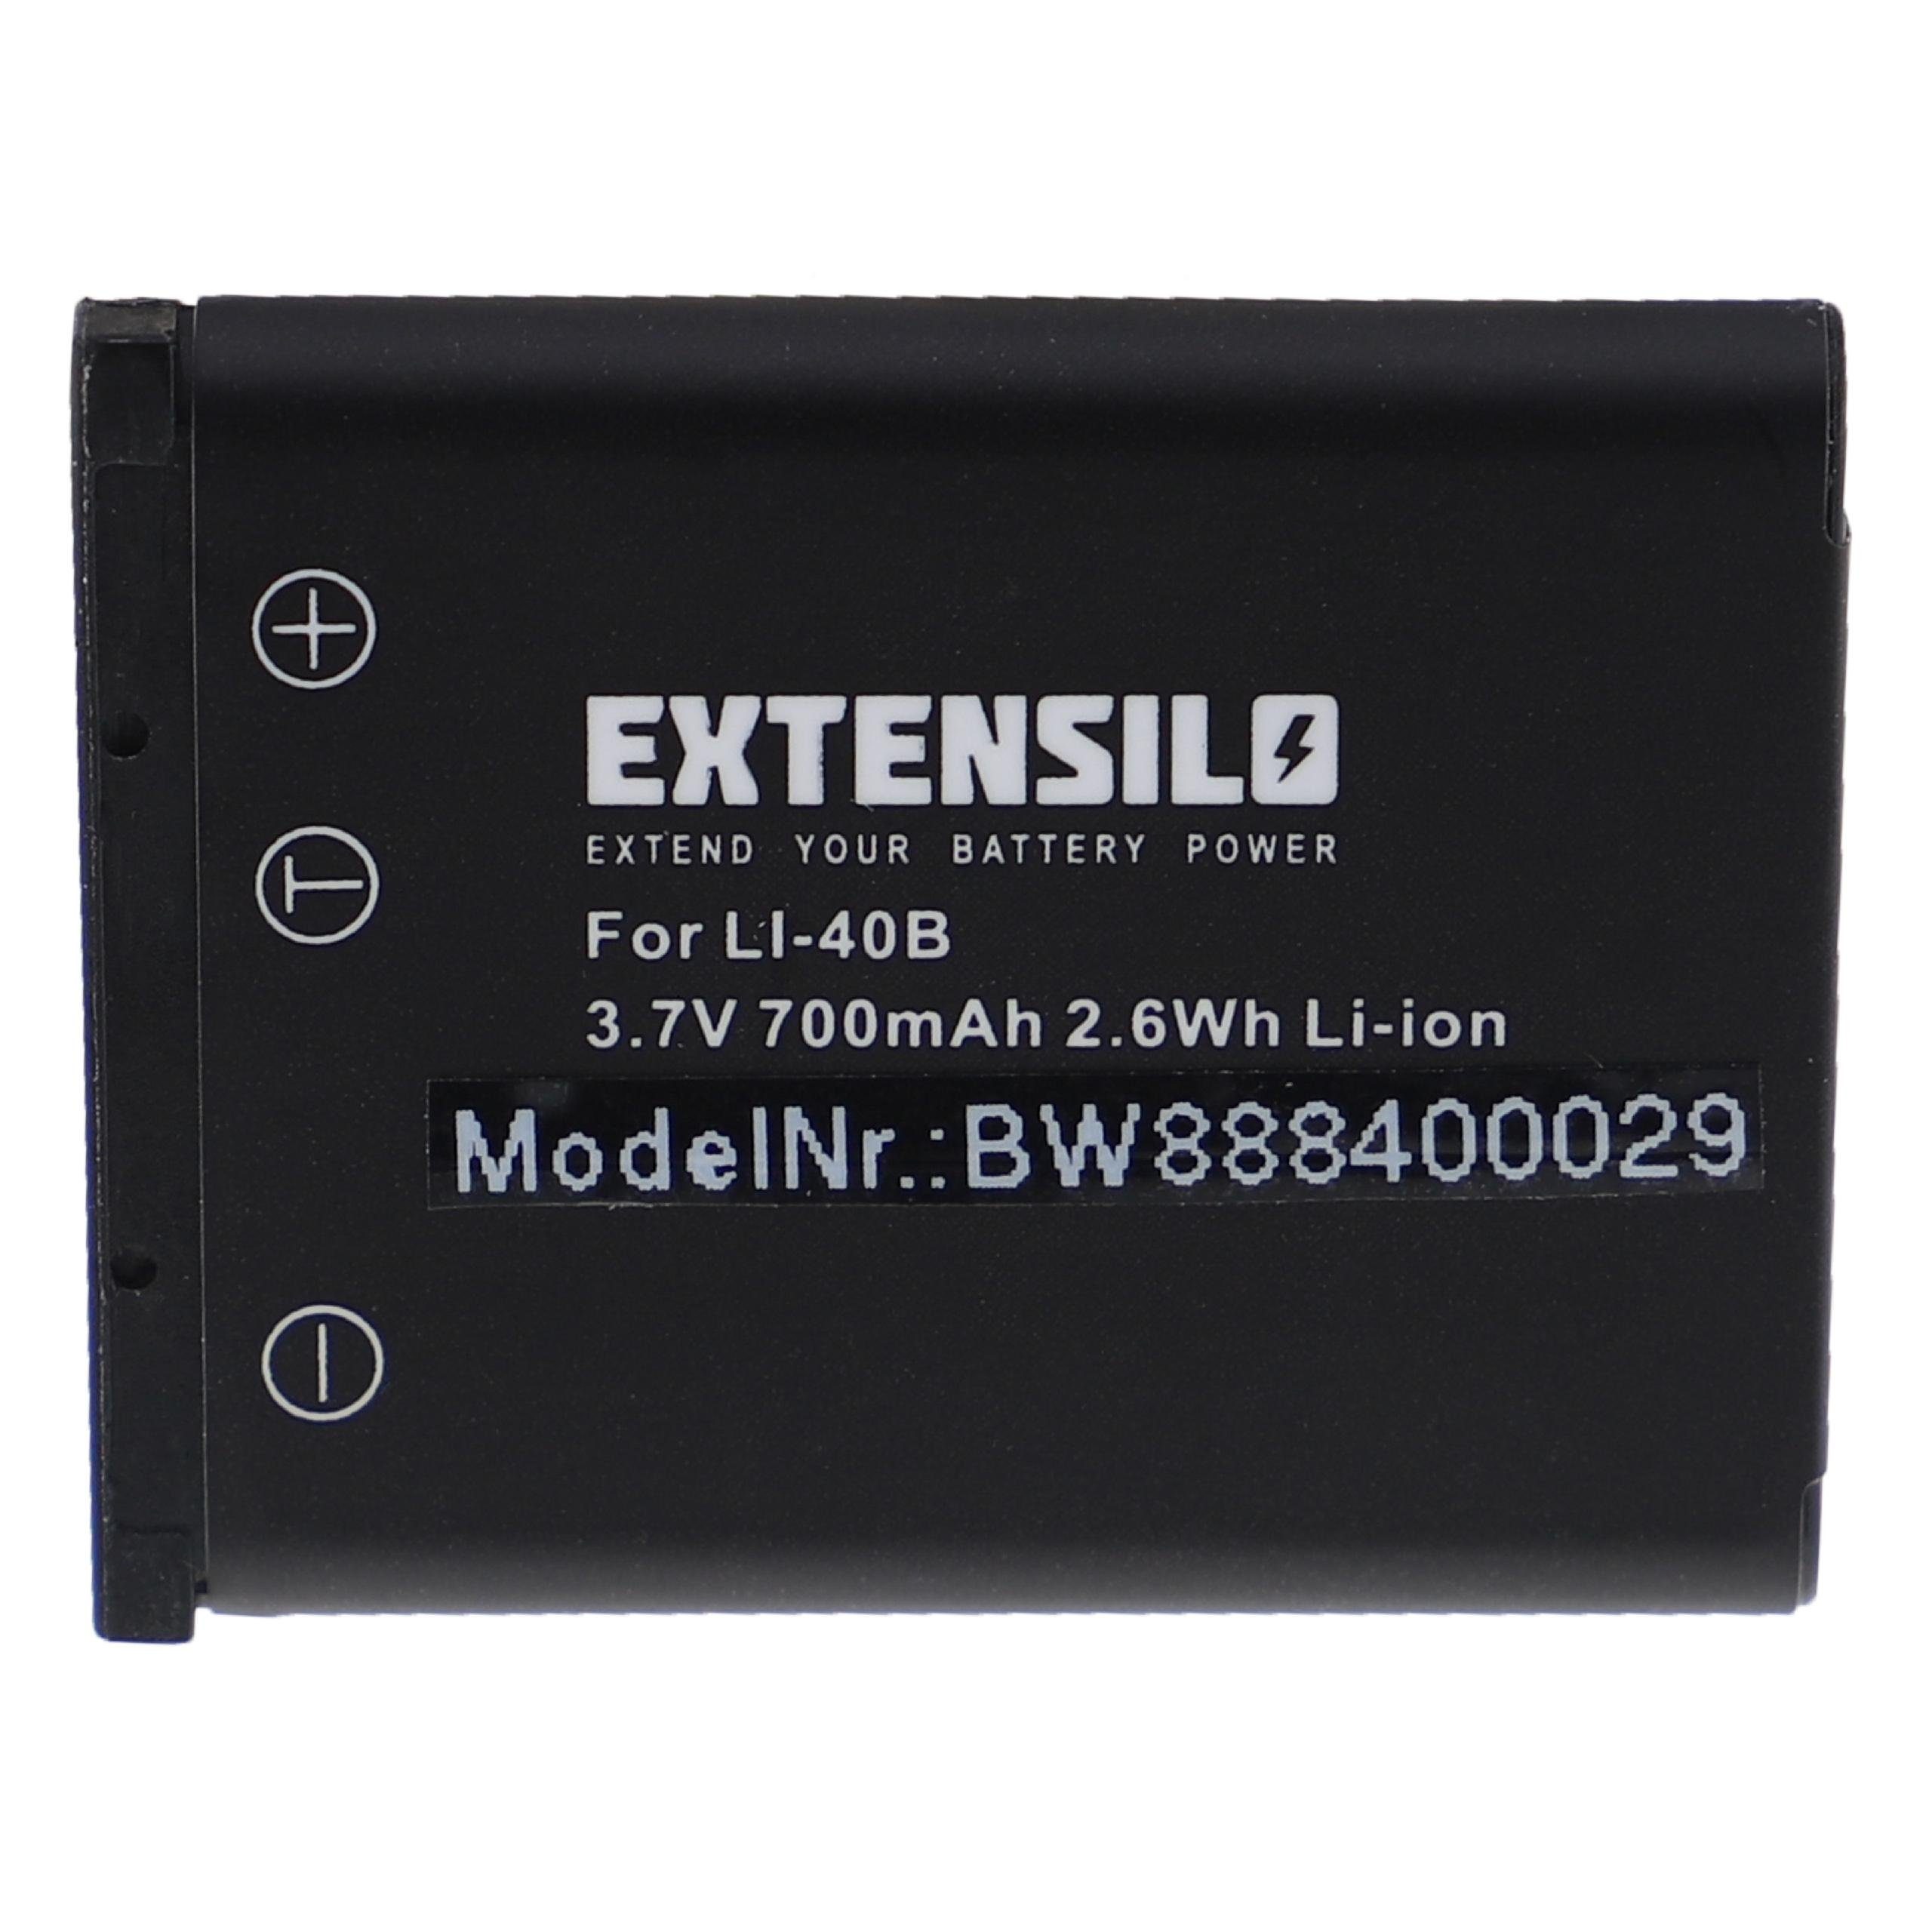 Extensilo kompatibel mit Medion MD87657, MD86930, MD87366, MD87857, MD86831 Kamera-Akku Li-Ion 700 mAh (3,7 V) | Akkus und PowerBanks